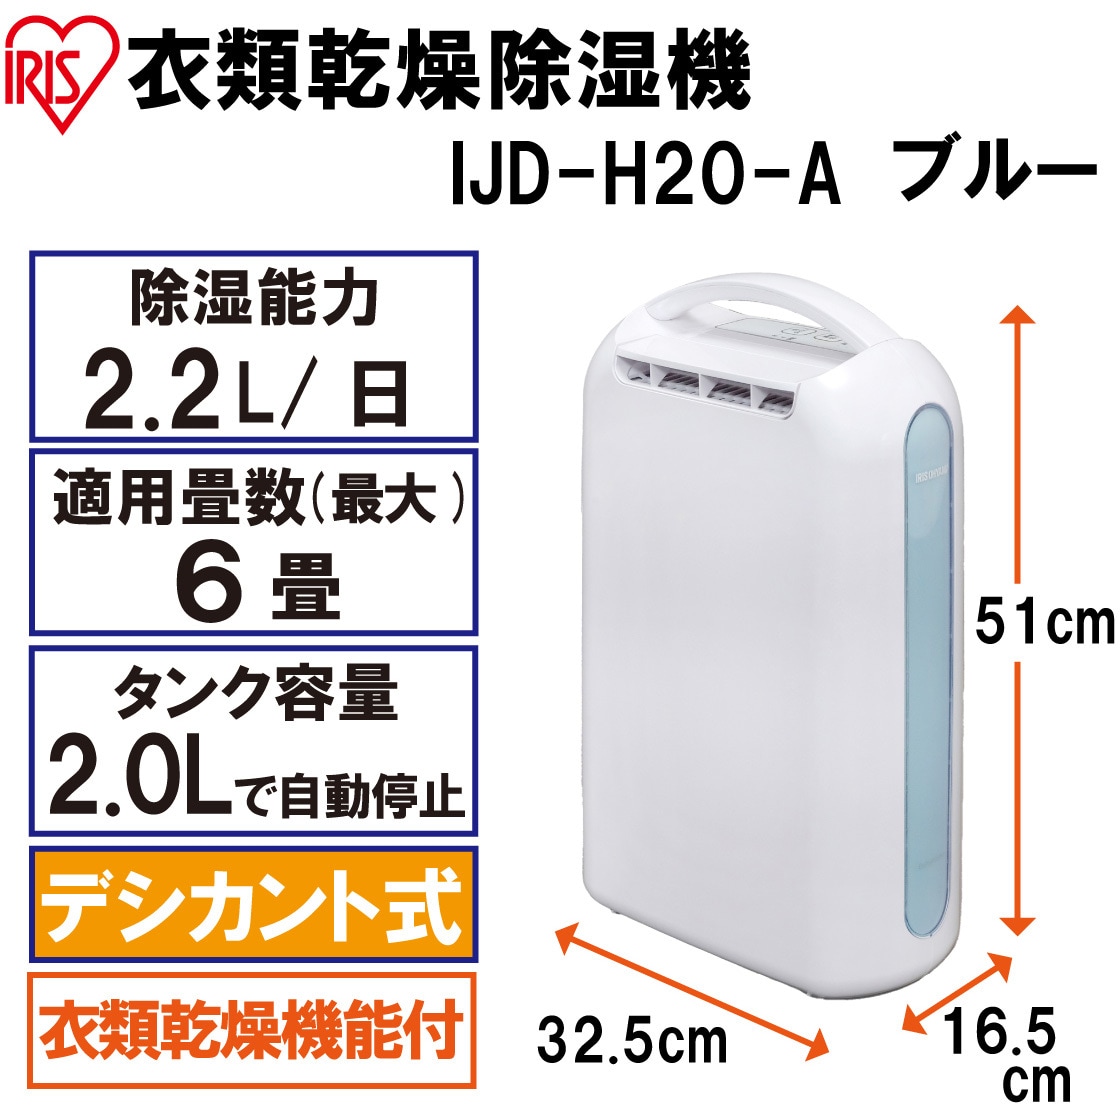 IJD-H20-A 衣類乾燥除湿機(デシカント式) 1台 アイリスオーヤマ 【通販サイトMonotaRO】